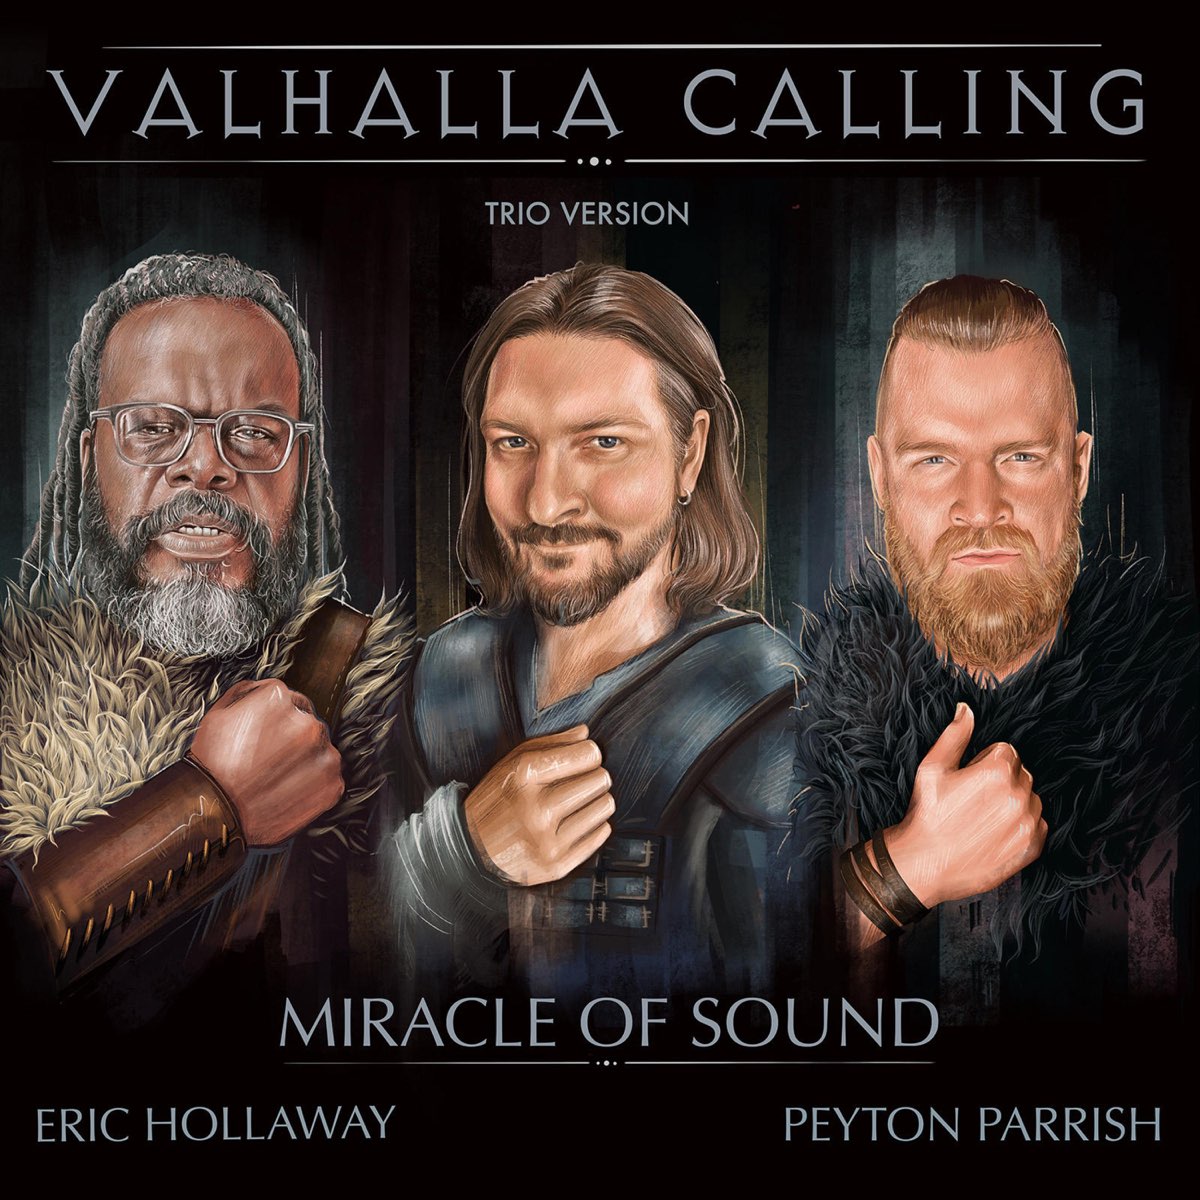 Valhalla calling - Miracle of Sound & Peyton Parrish